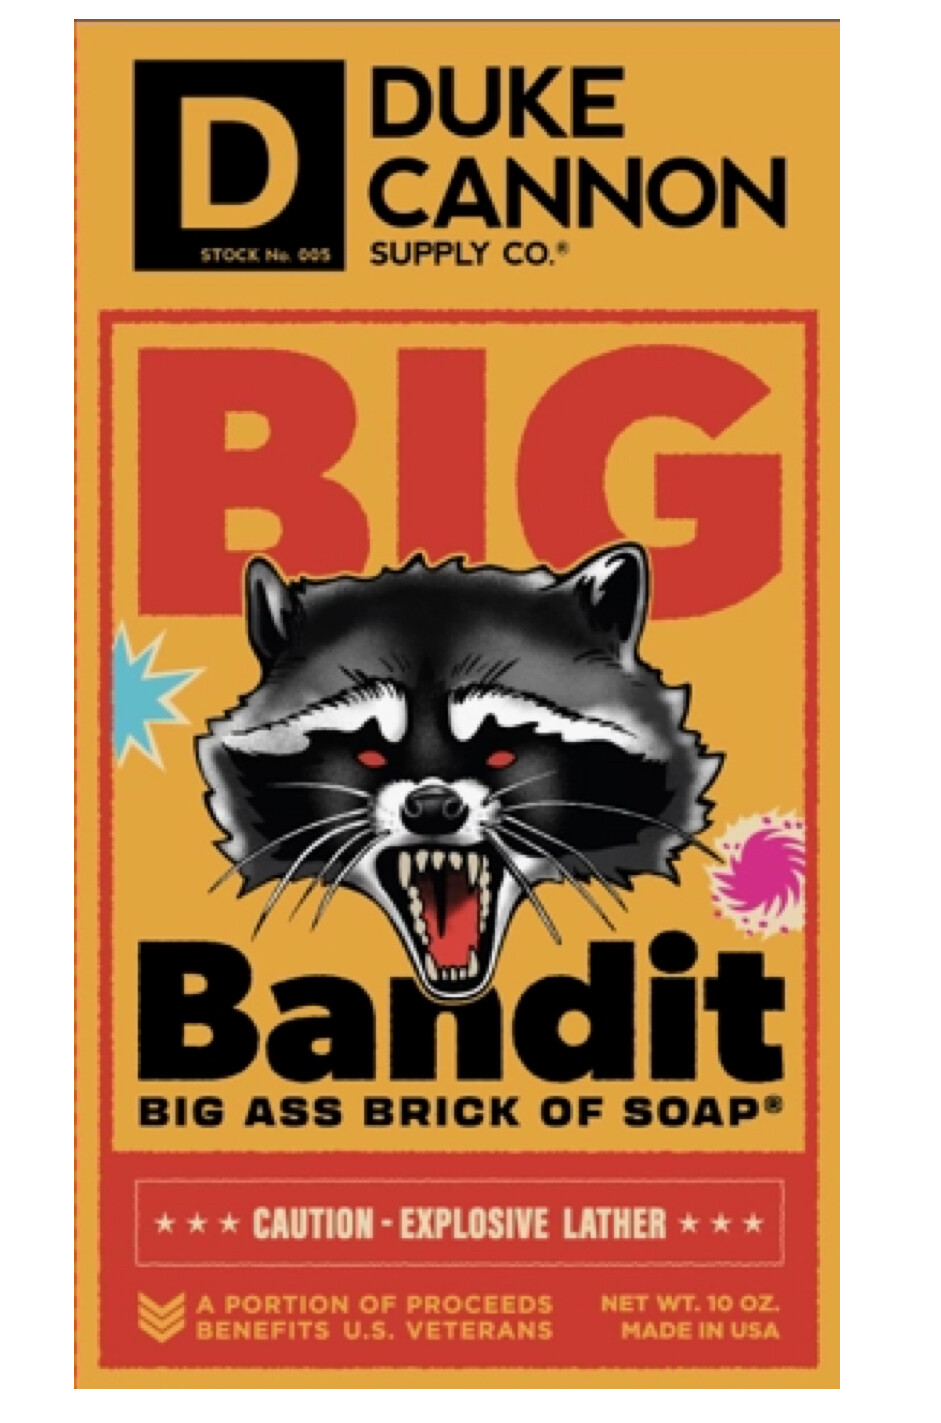 Big Bandit Bar Soap